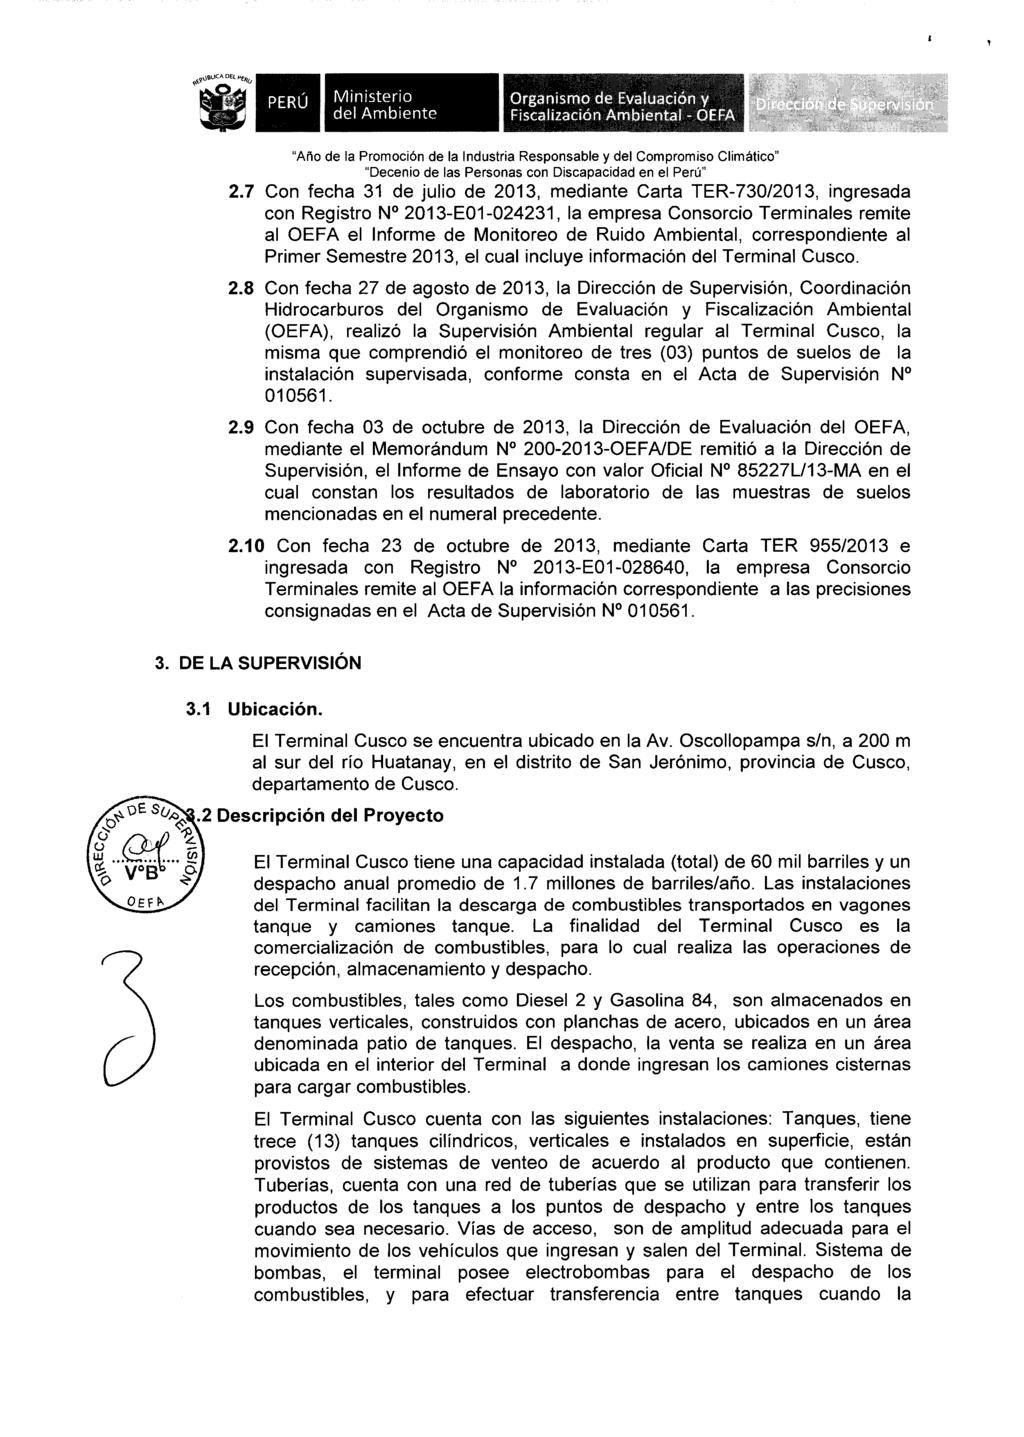 Wll Ministerio Organismo de Evah:.1acidn Y: Fiscalización Ambiental - OEF"' 2.